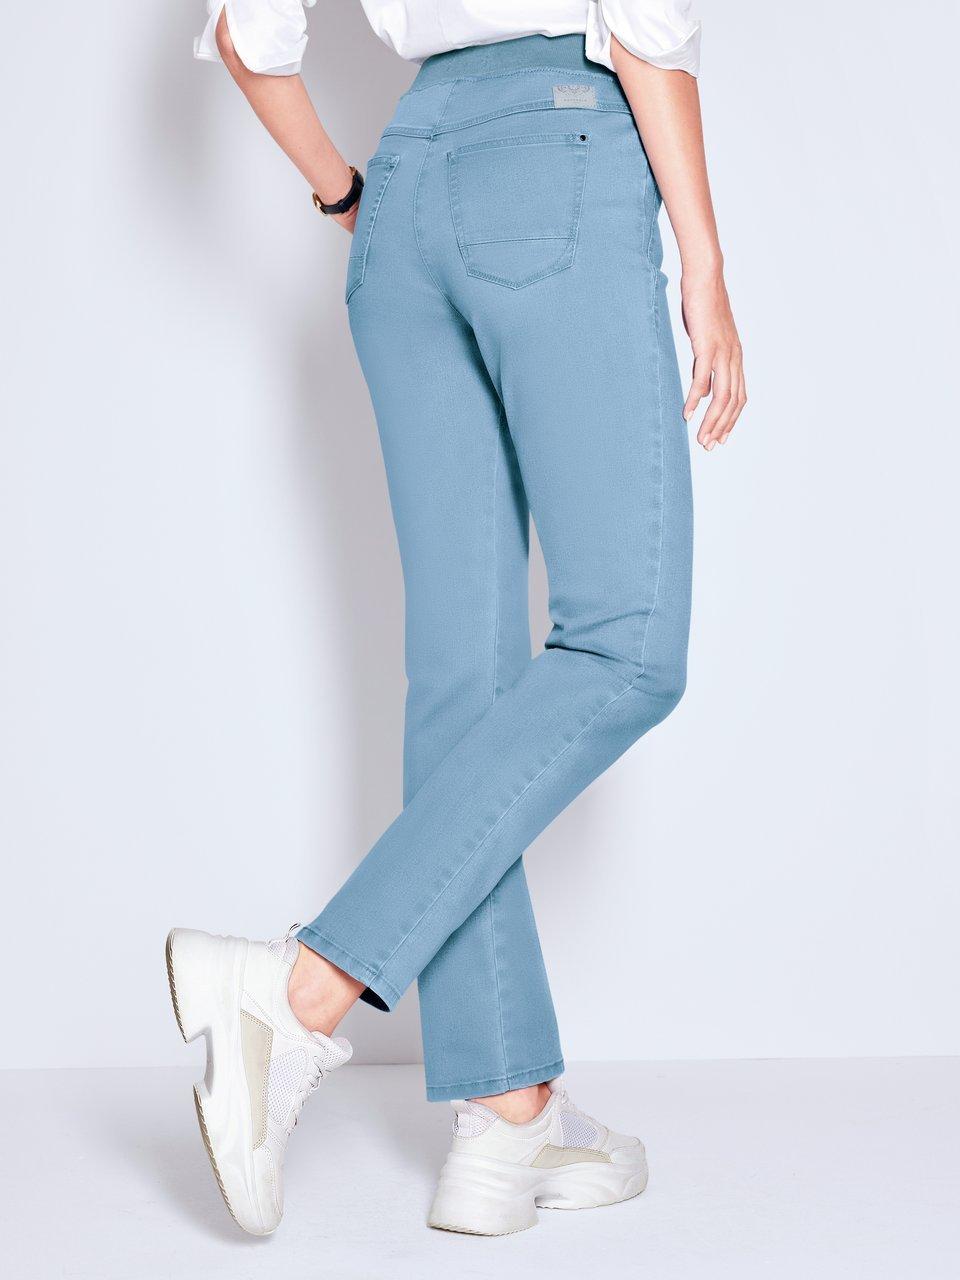 Damen Jeans in Größe 44 Peter kaufen Hahn online bei